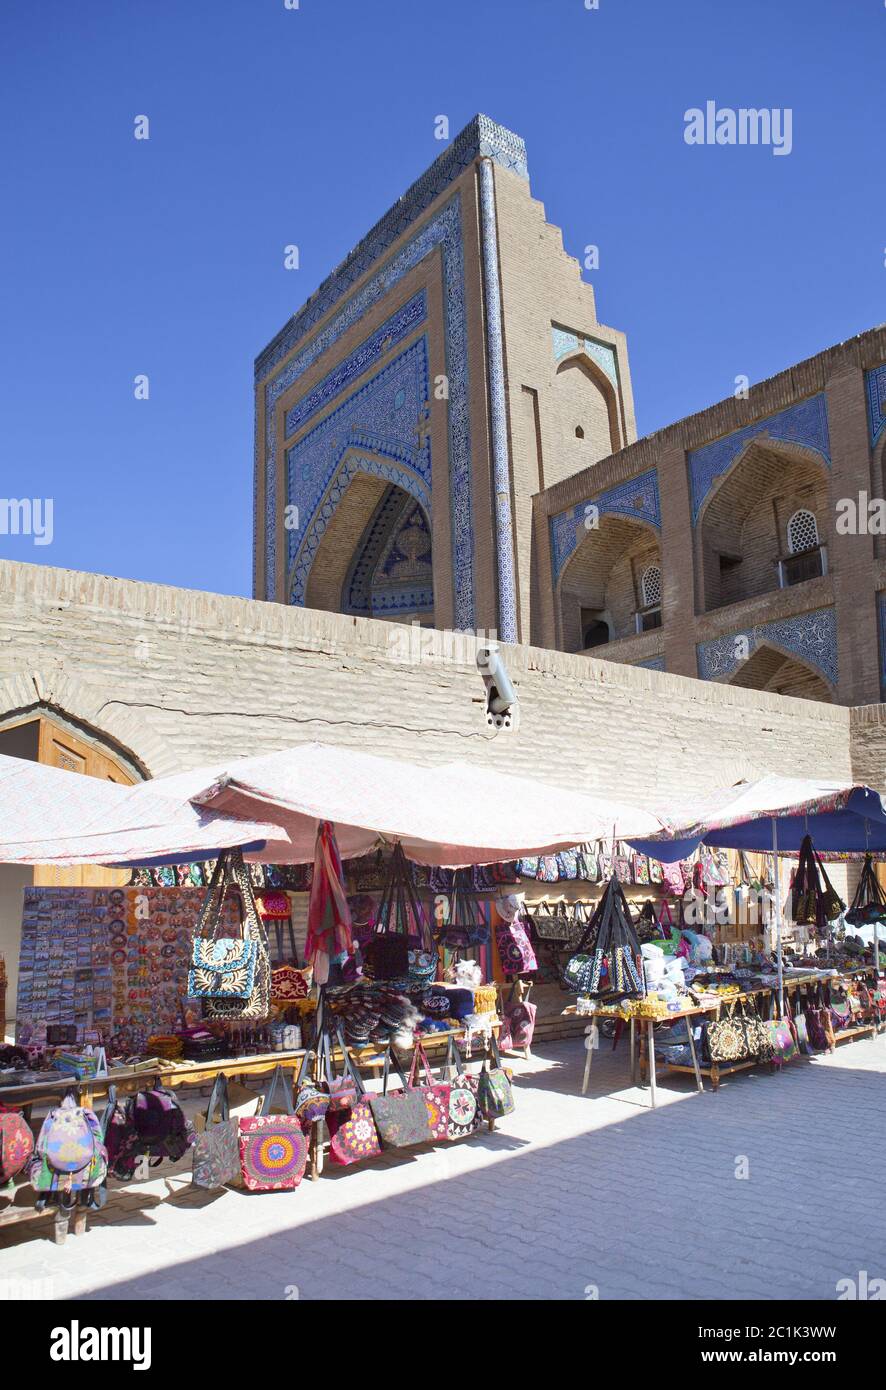 rue touristique avec souvenirs dans la vieille ville. Khiva. Ouzbékistan Banque D'Images